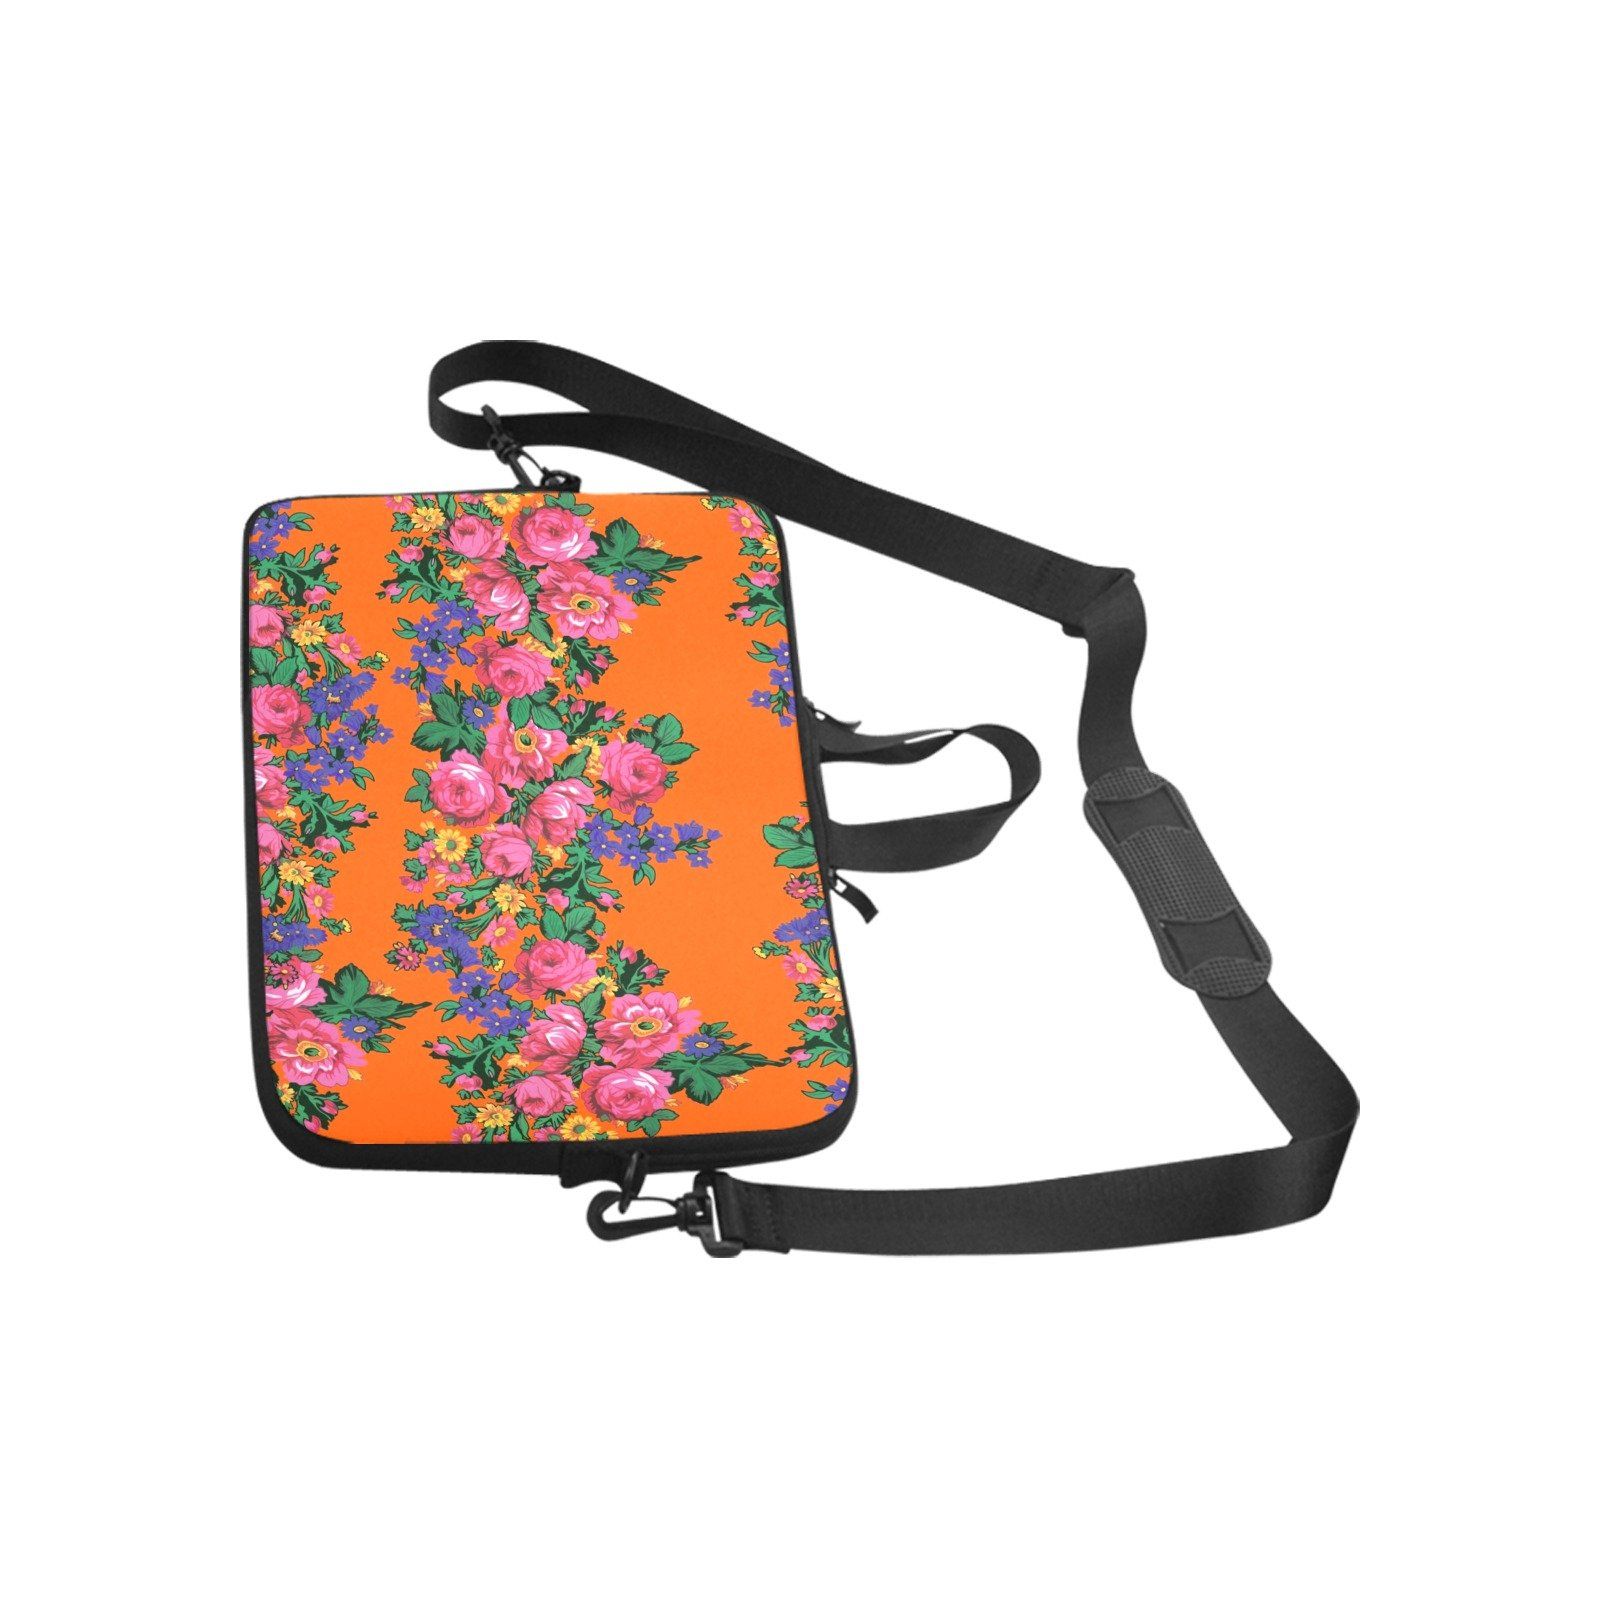 Kokum's Revenge Sierra Laptop Handbags 14" bag e-joyer 